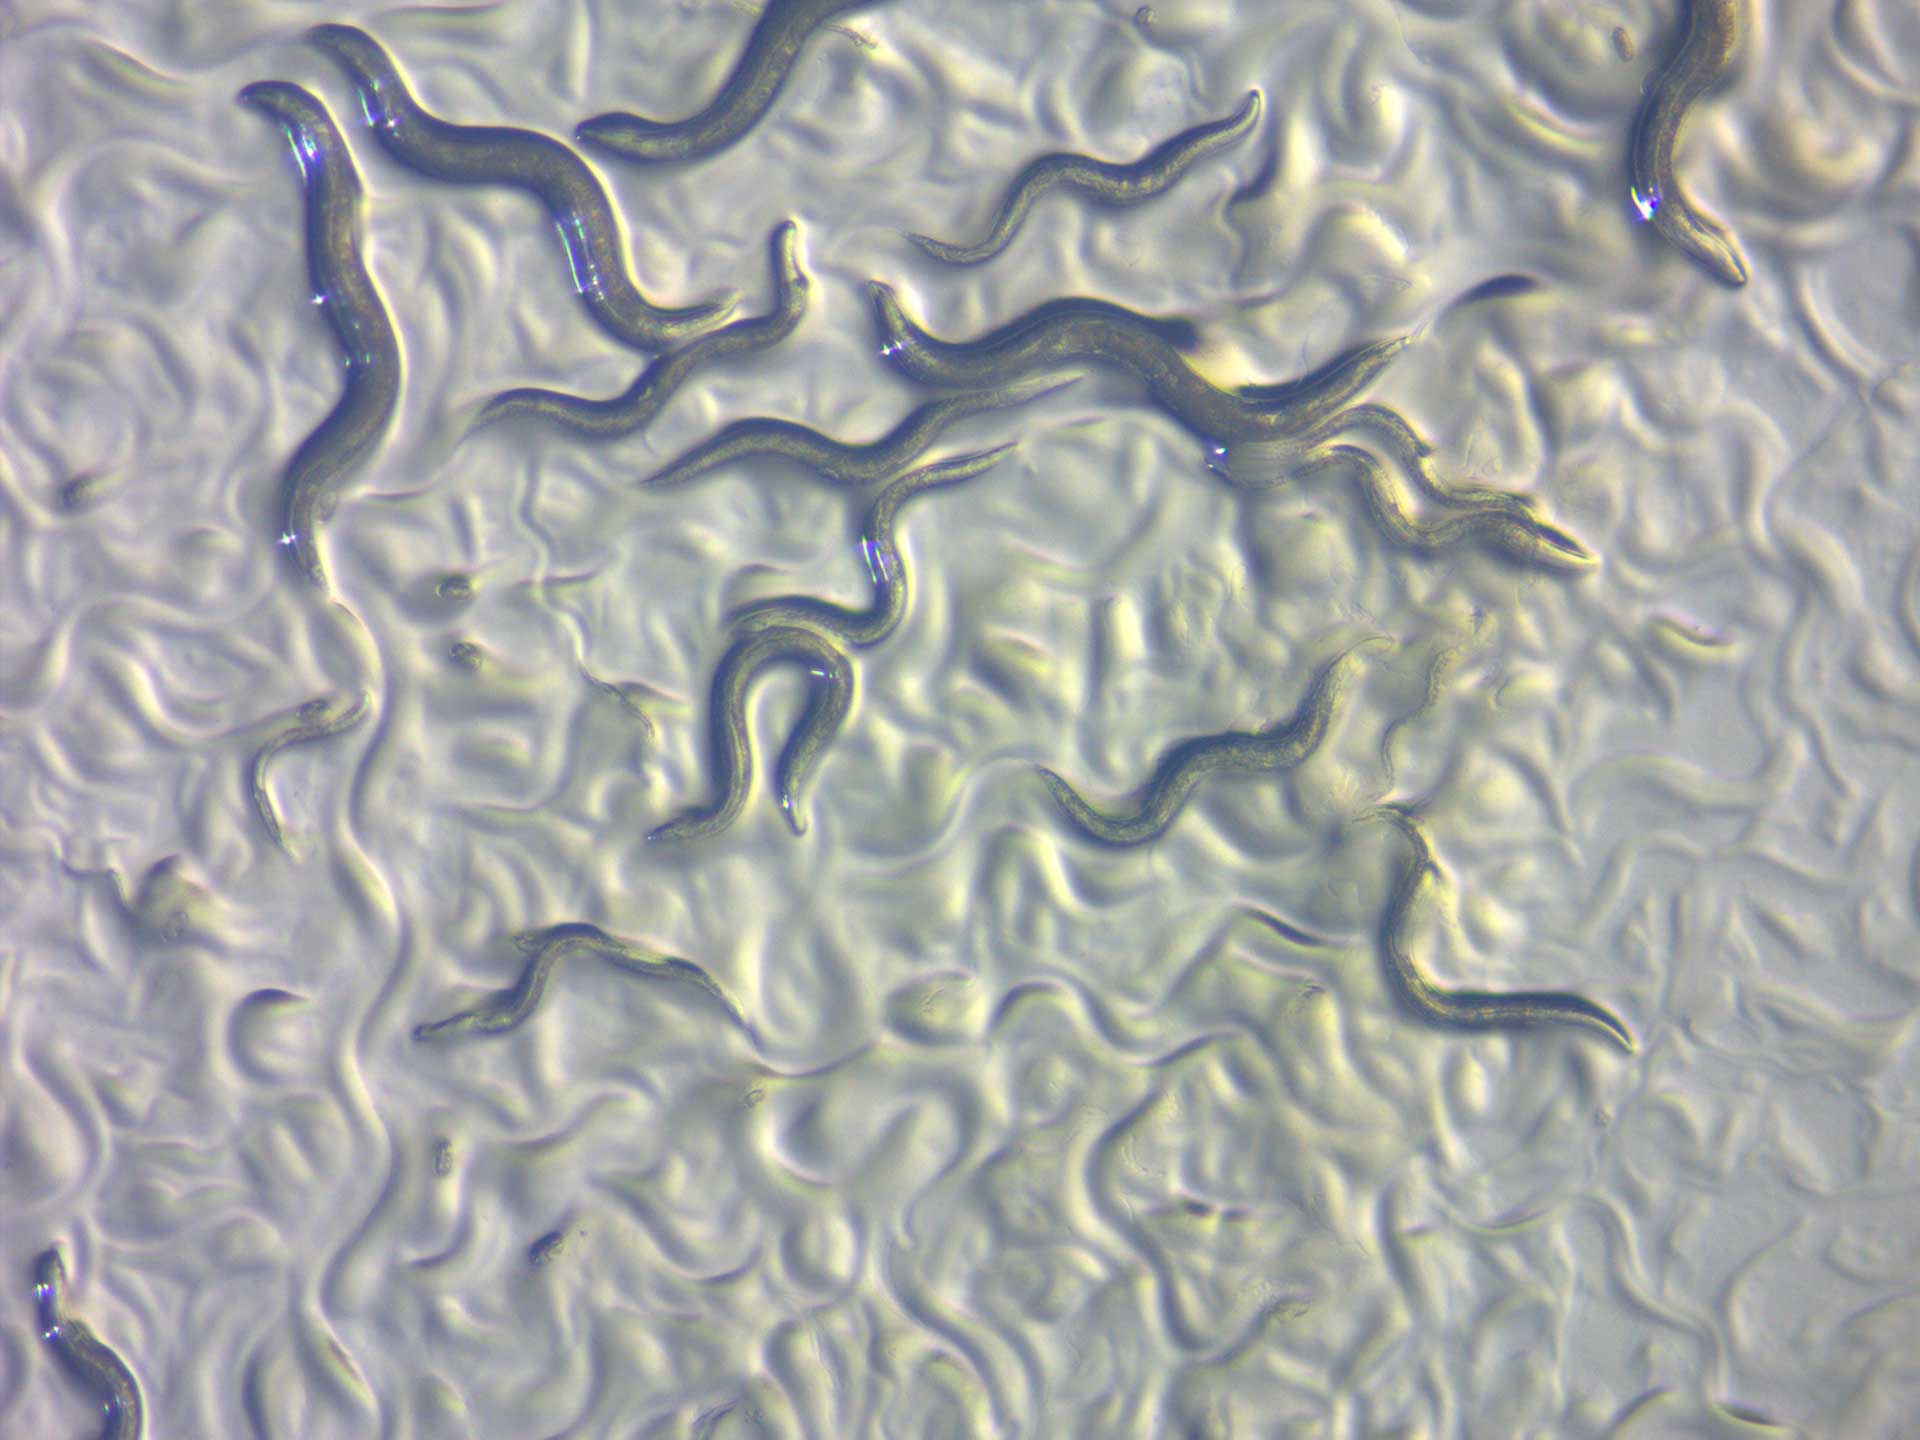 C. elegans en lumière réfléchie à champ clair. Image capturée avec ZEISS Stemi 508.